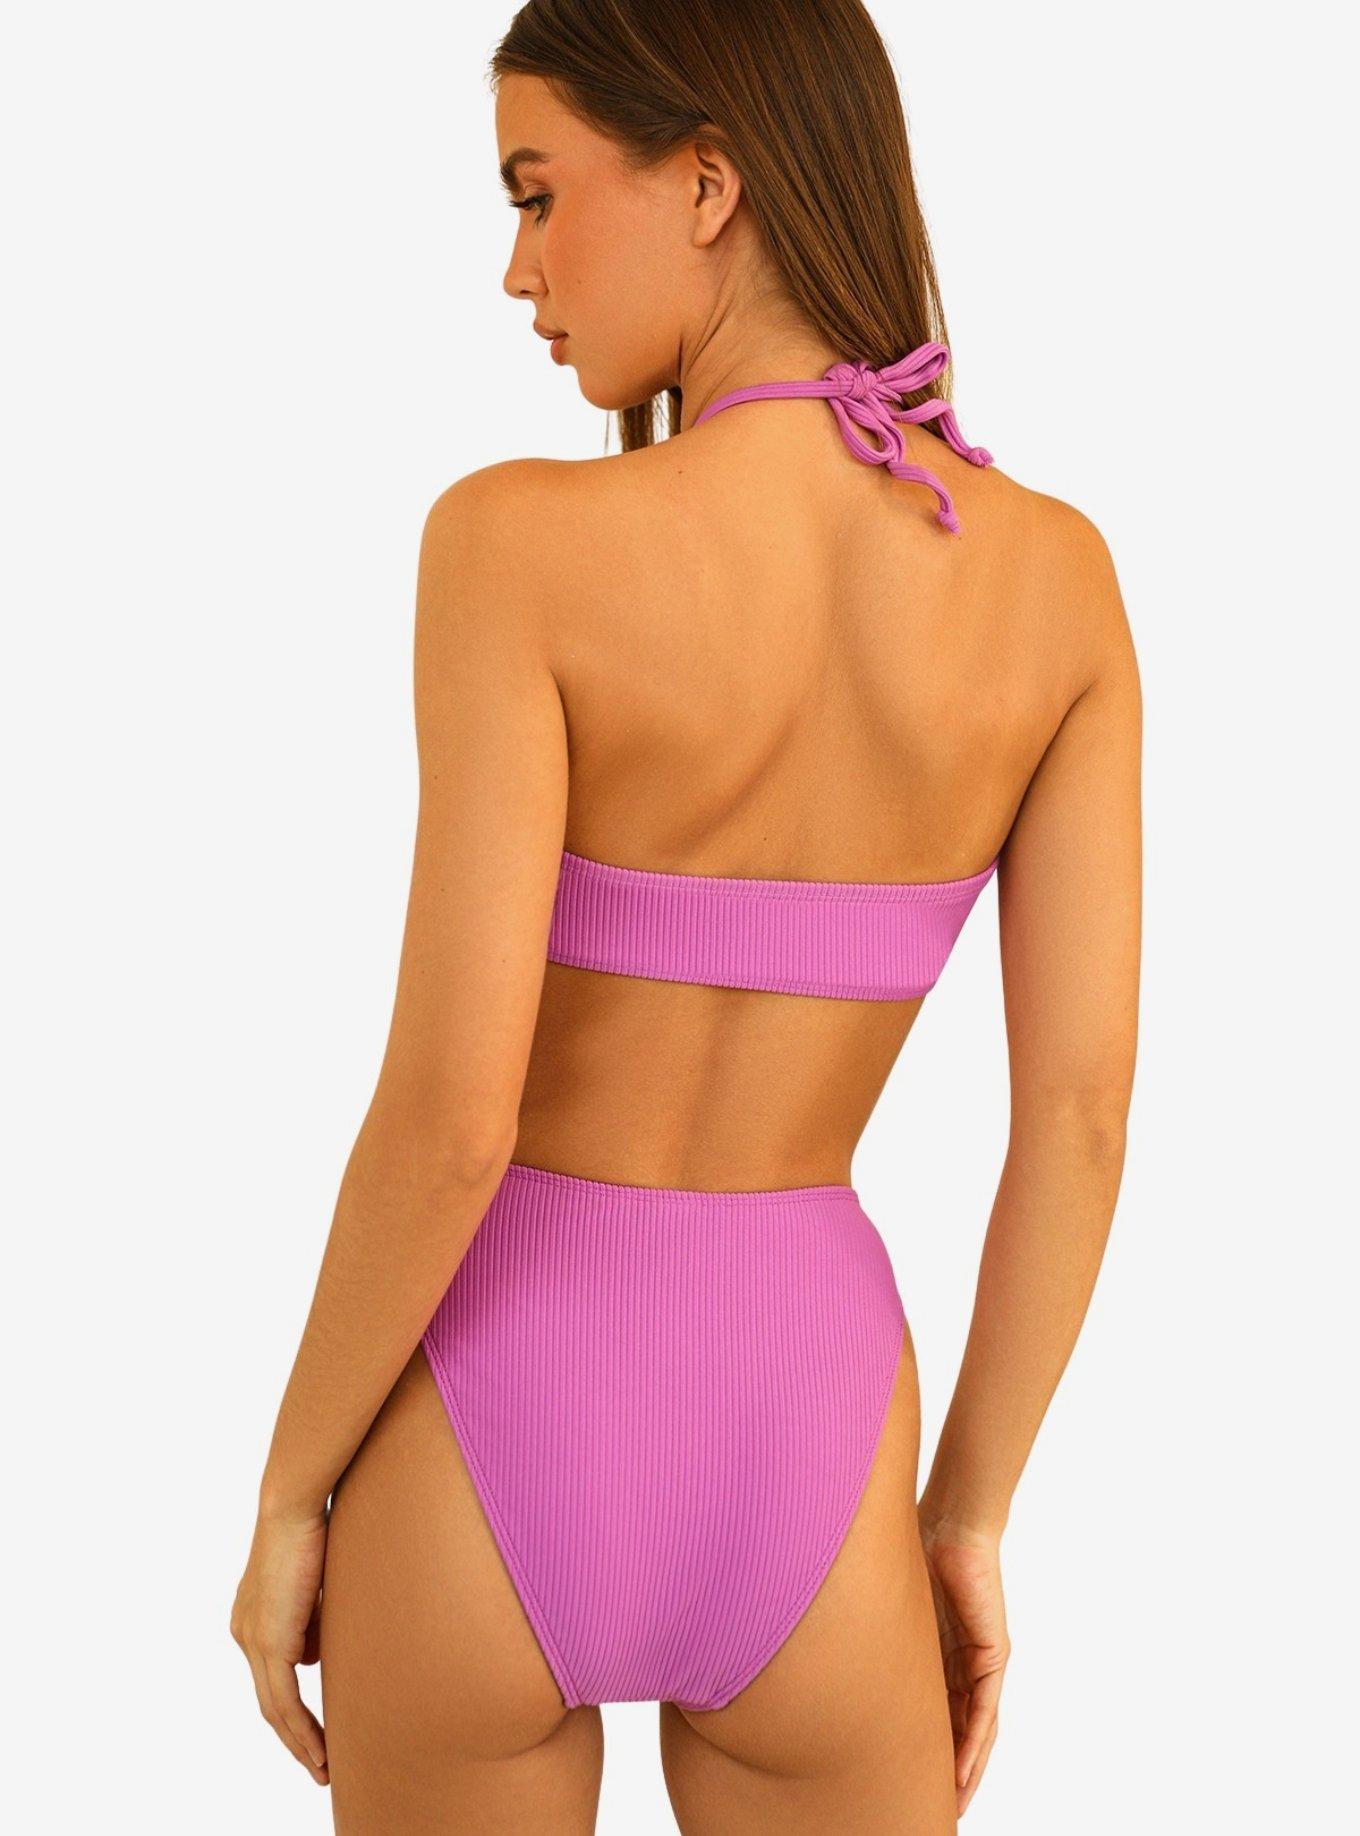 The Amalfi Bikini Top